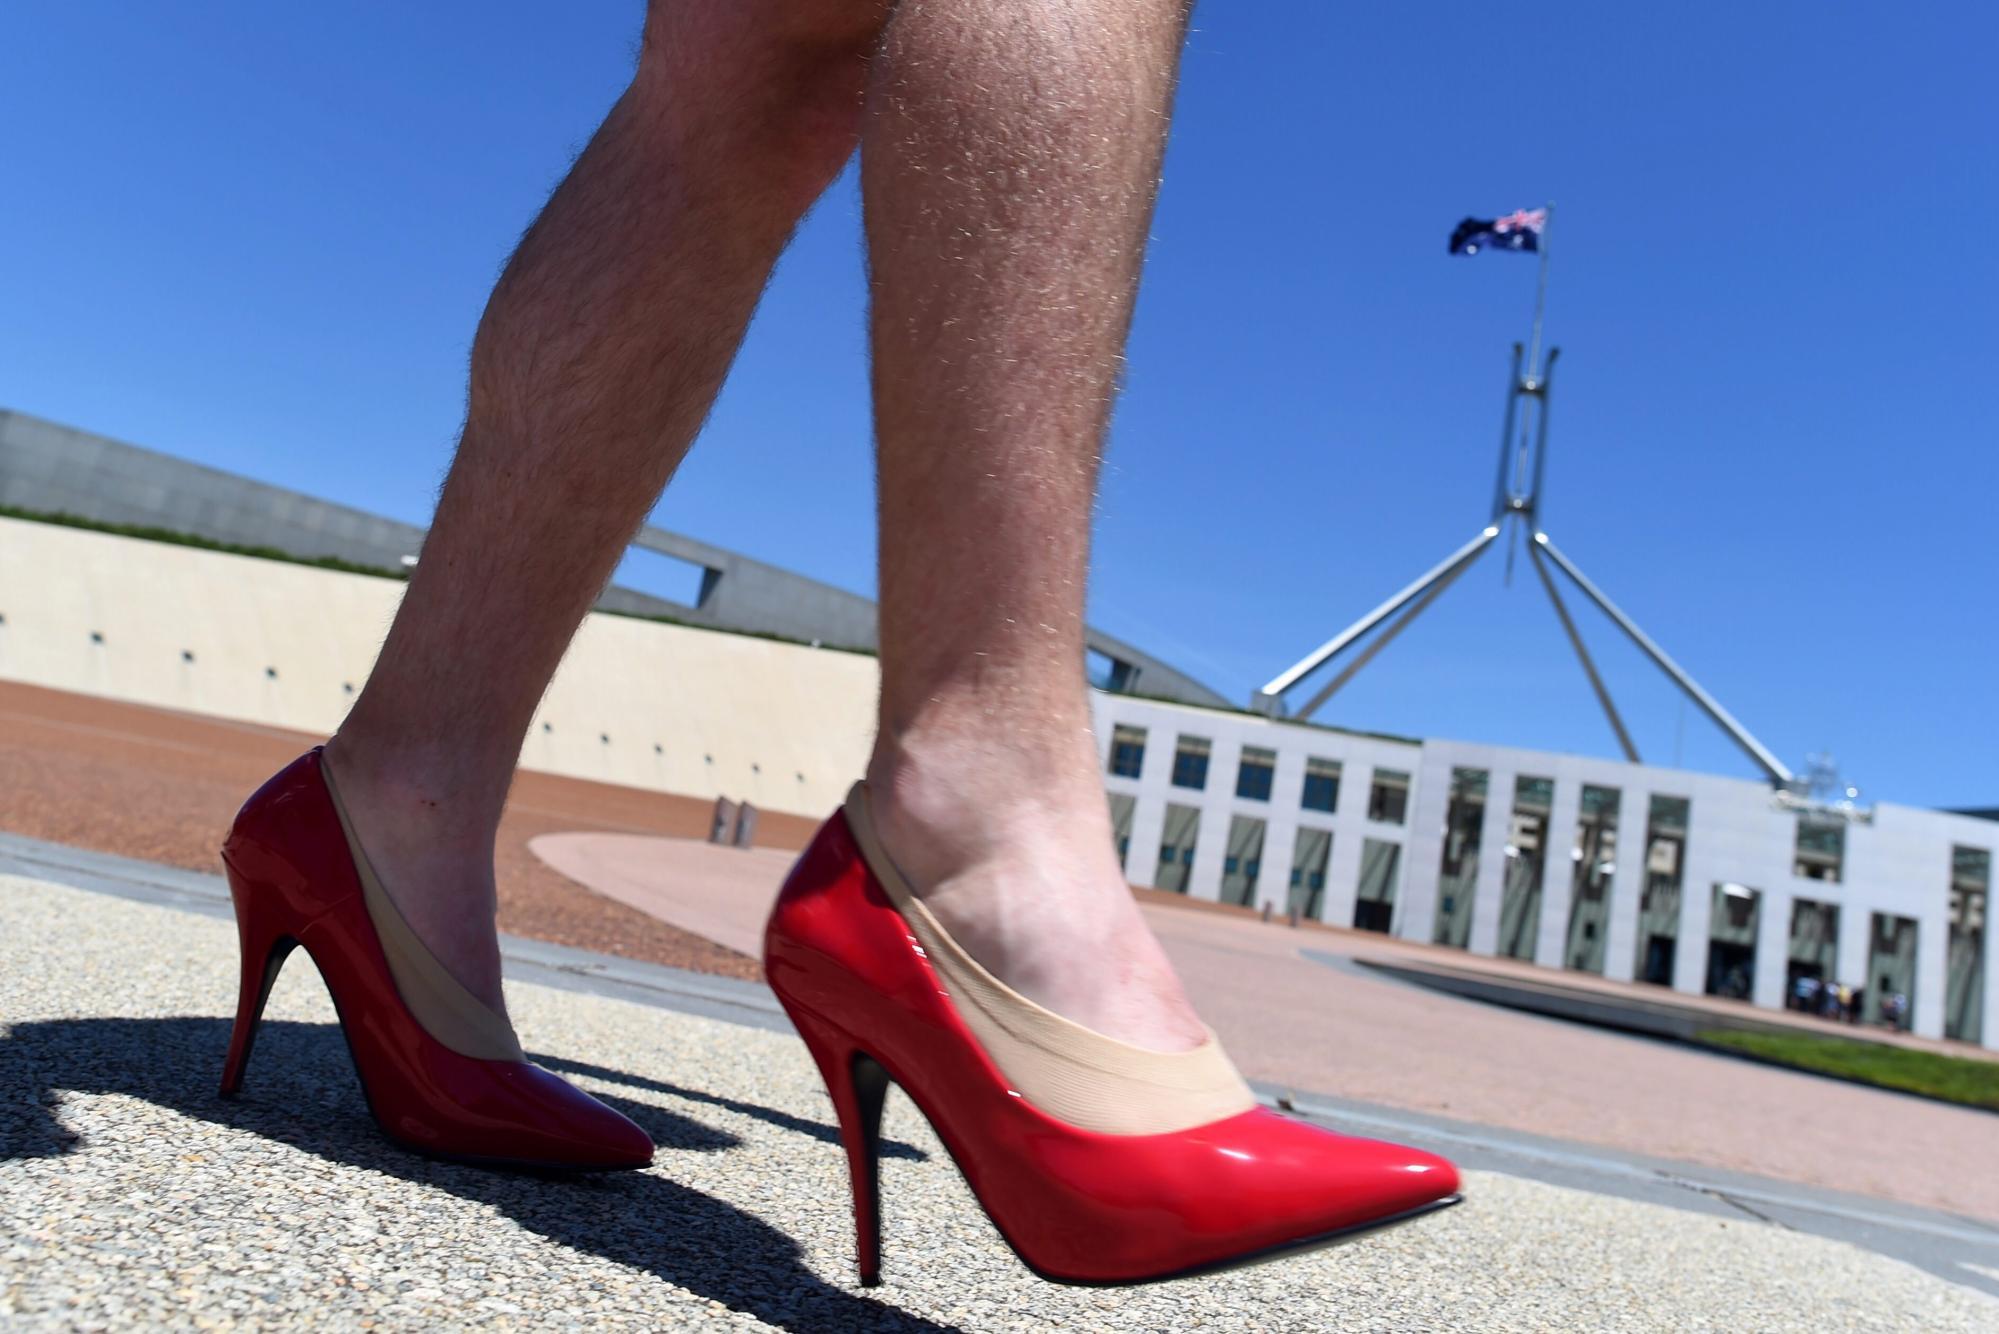 Chiến dịch Walk a Mile in Her Shoes yêu cầu nam giới đặt mình vào vị trí của phụ nữ theo đúng nghĩa đen như một cách để đối đầu với định kiến ​​giới. Ảnh: EPA